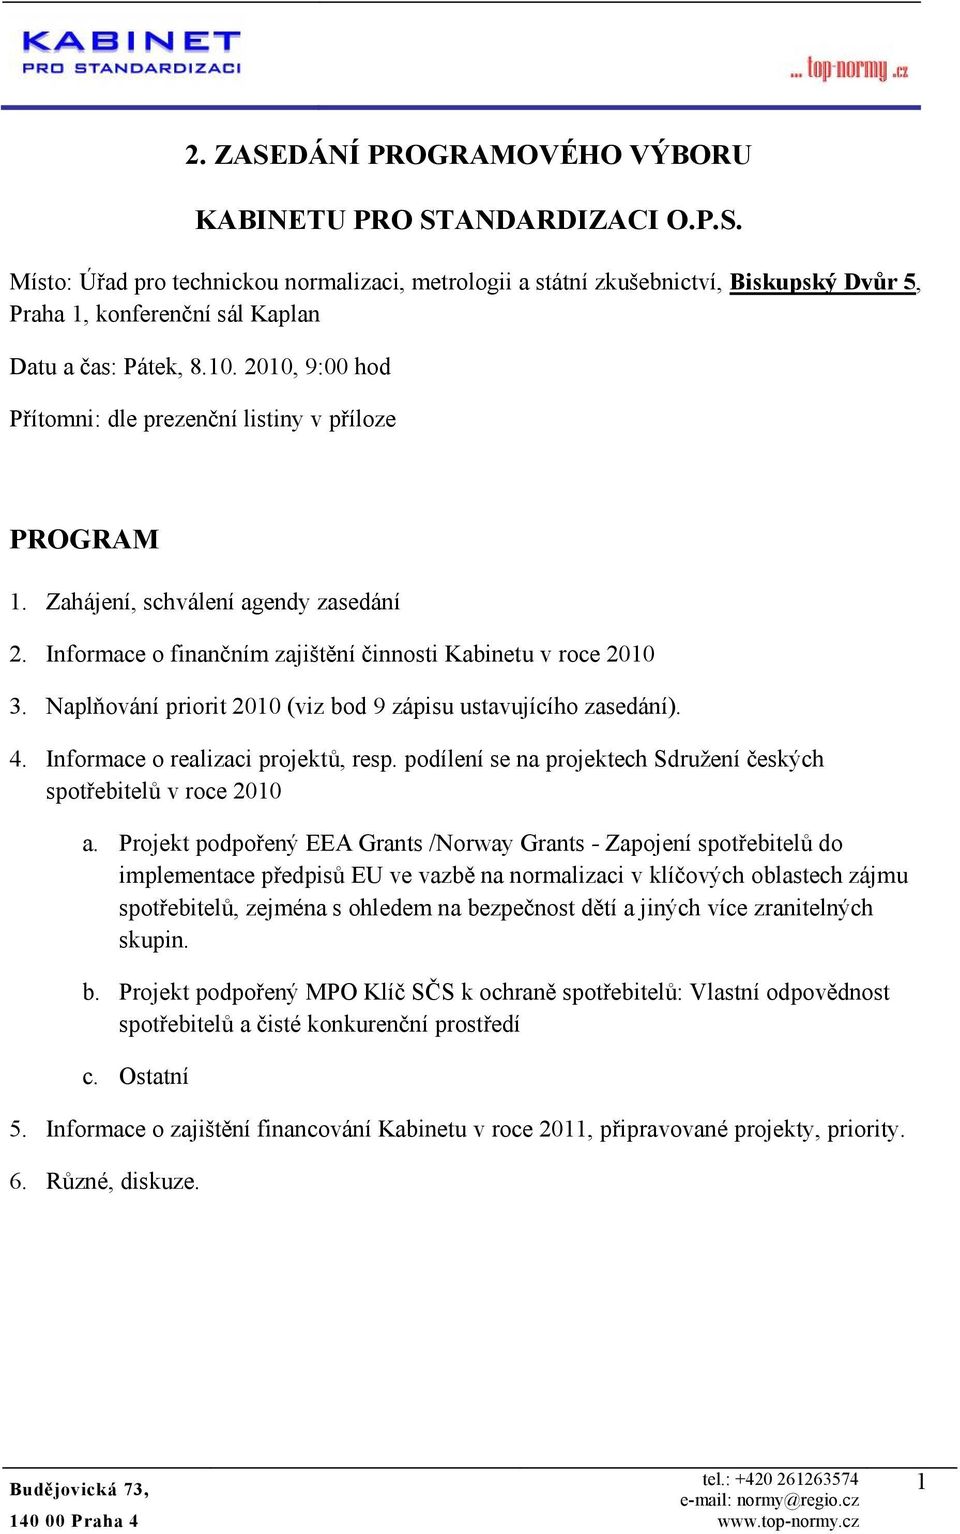 Naplňvání pririt 2010 (viz bd 9 zápisu ustavujícíh zasedání). 4. Infrmace realizaci prjektů, resp. pdílení se na prjektech Sdružení českých sptřebitelů v rce 2010 a.